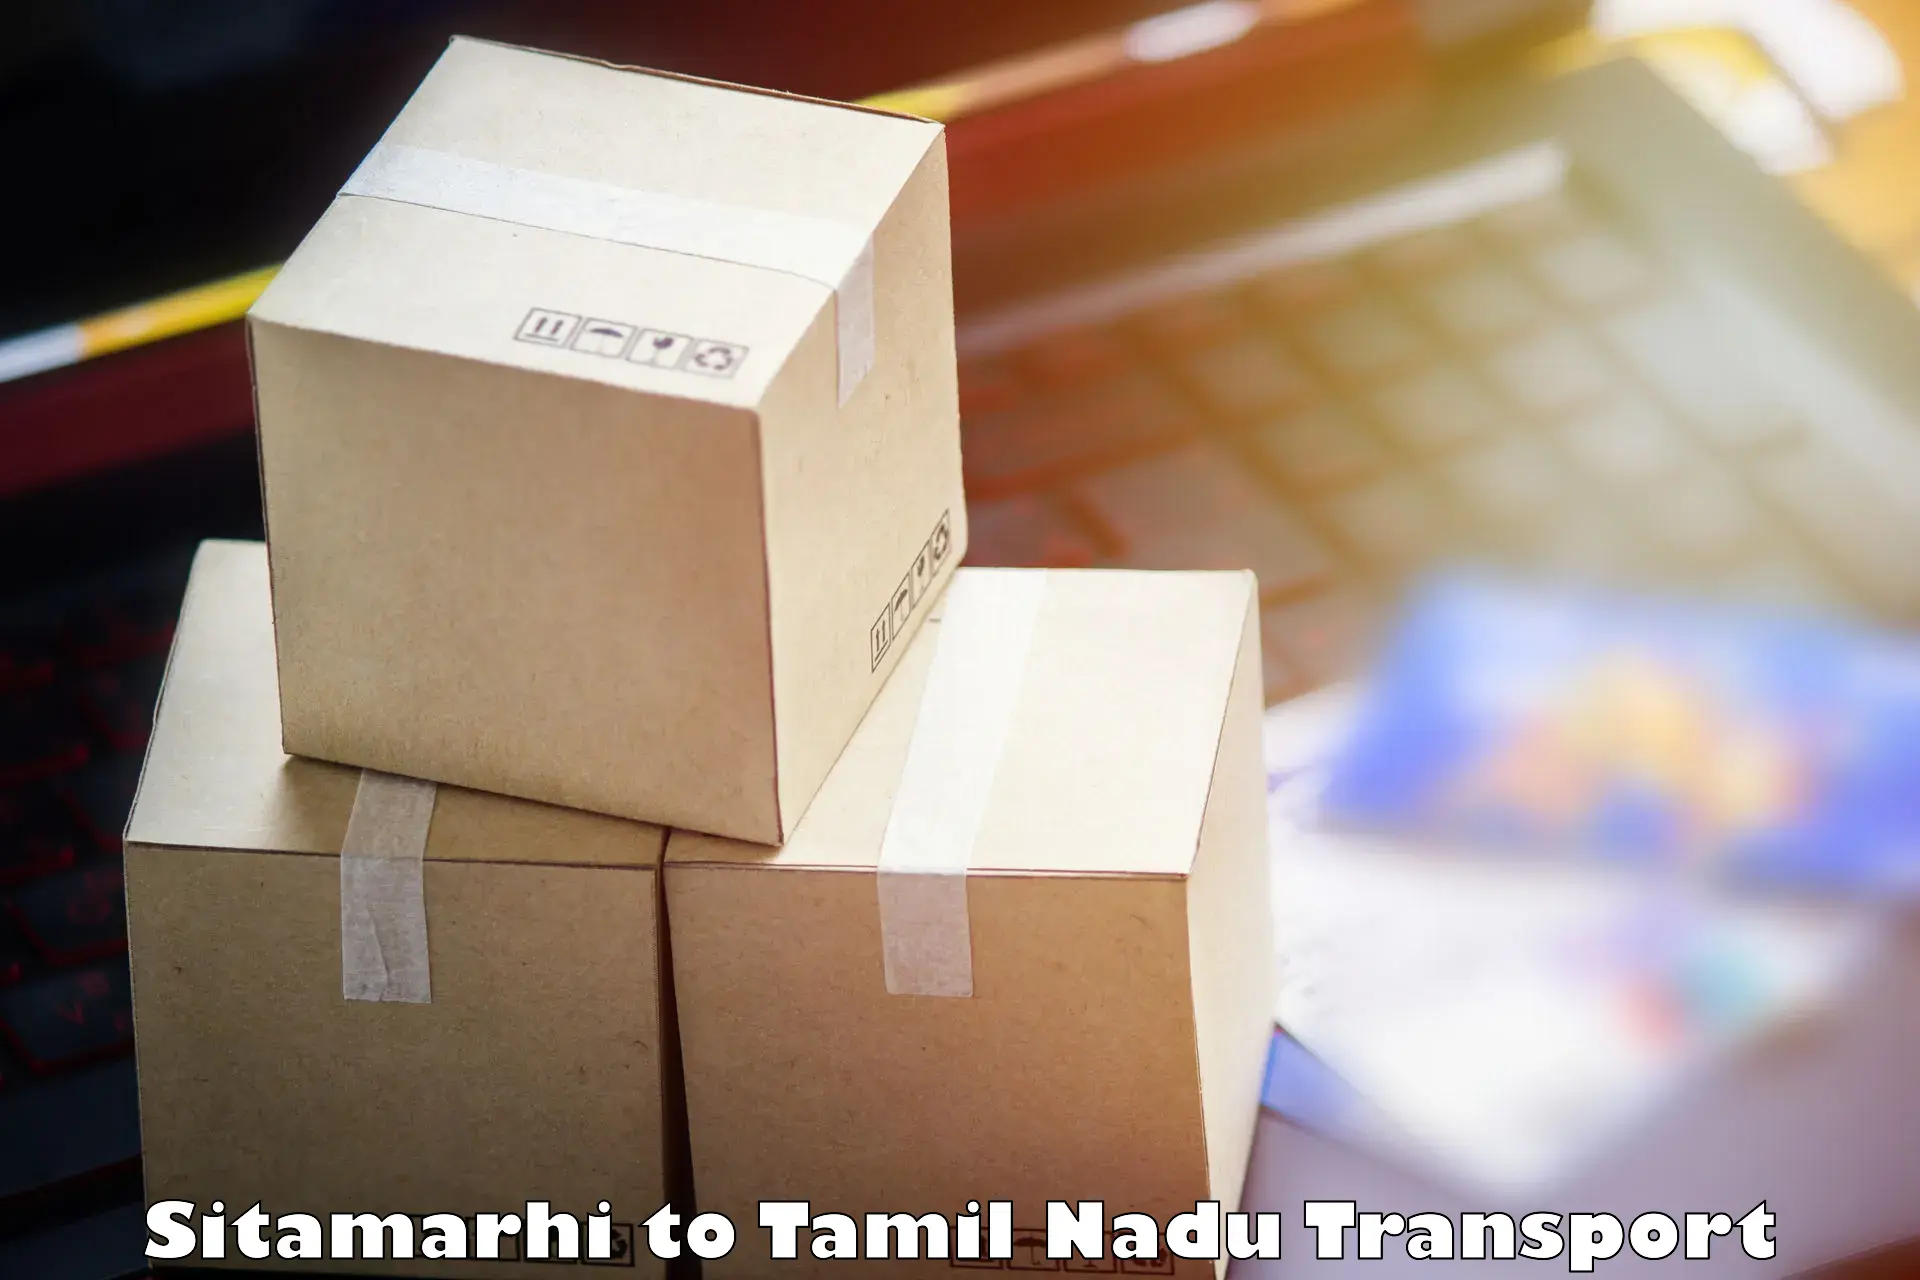 Land transport services Sitamarhi to IIIT Tiruchirappalli